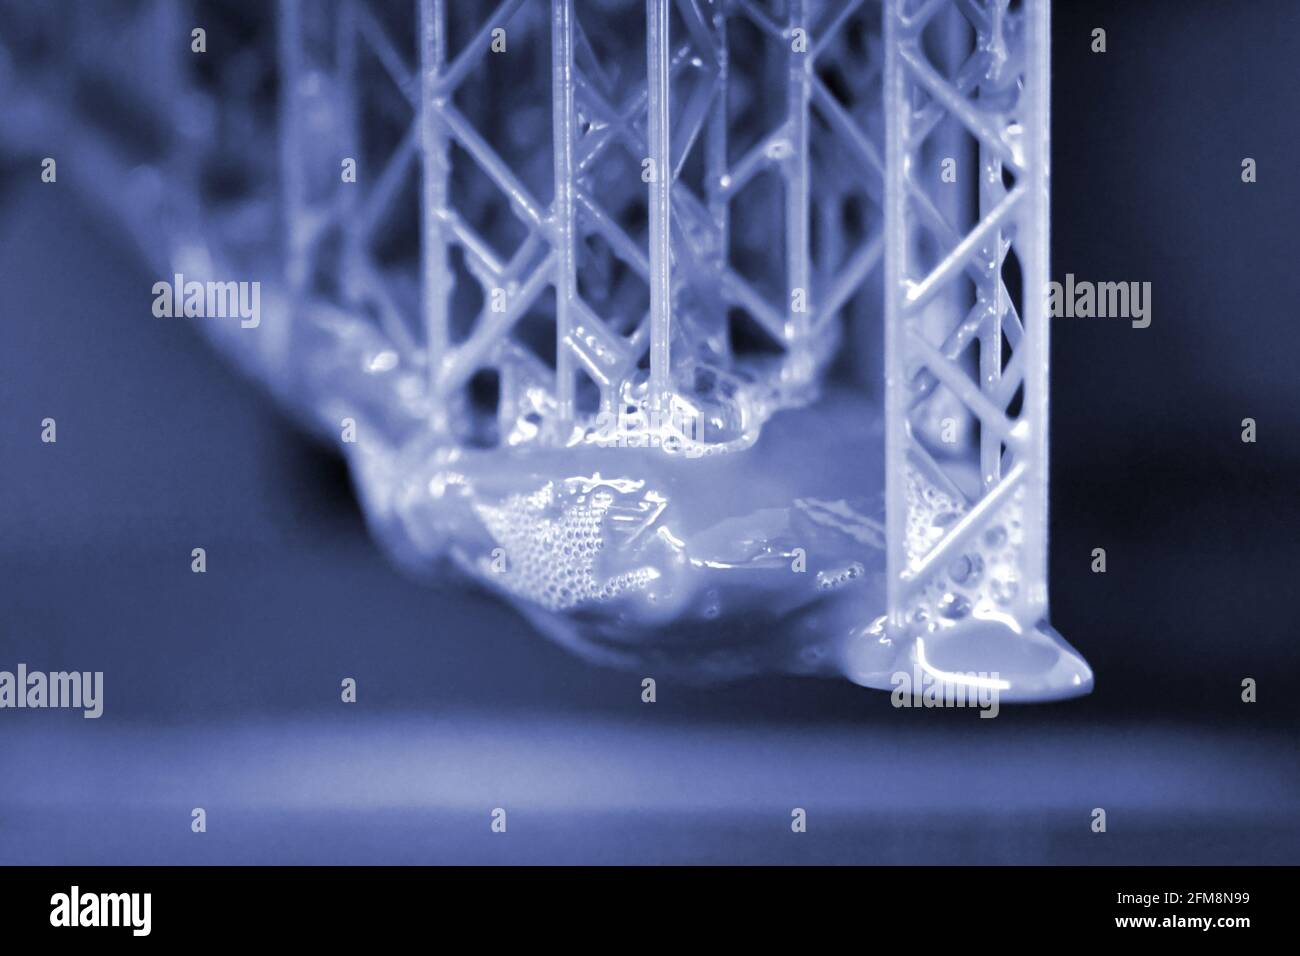 L'imprimante 3D stéréolithographie DPL crée de petits détails et des gouttes de liquide Banque D'Images